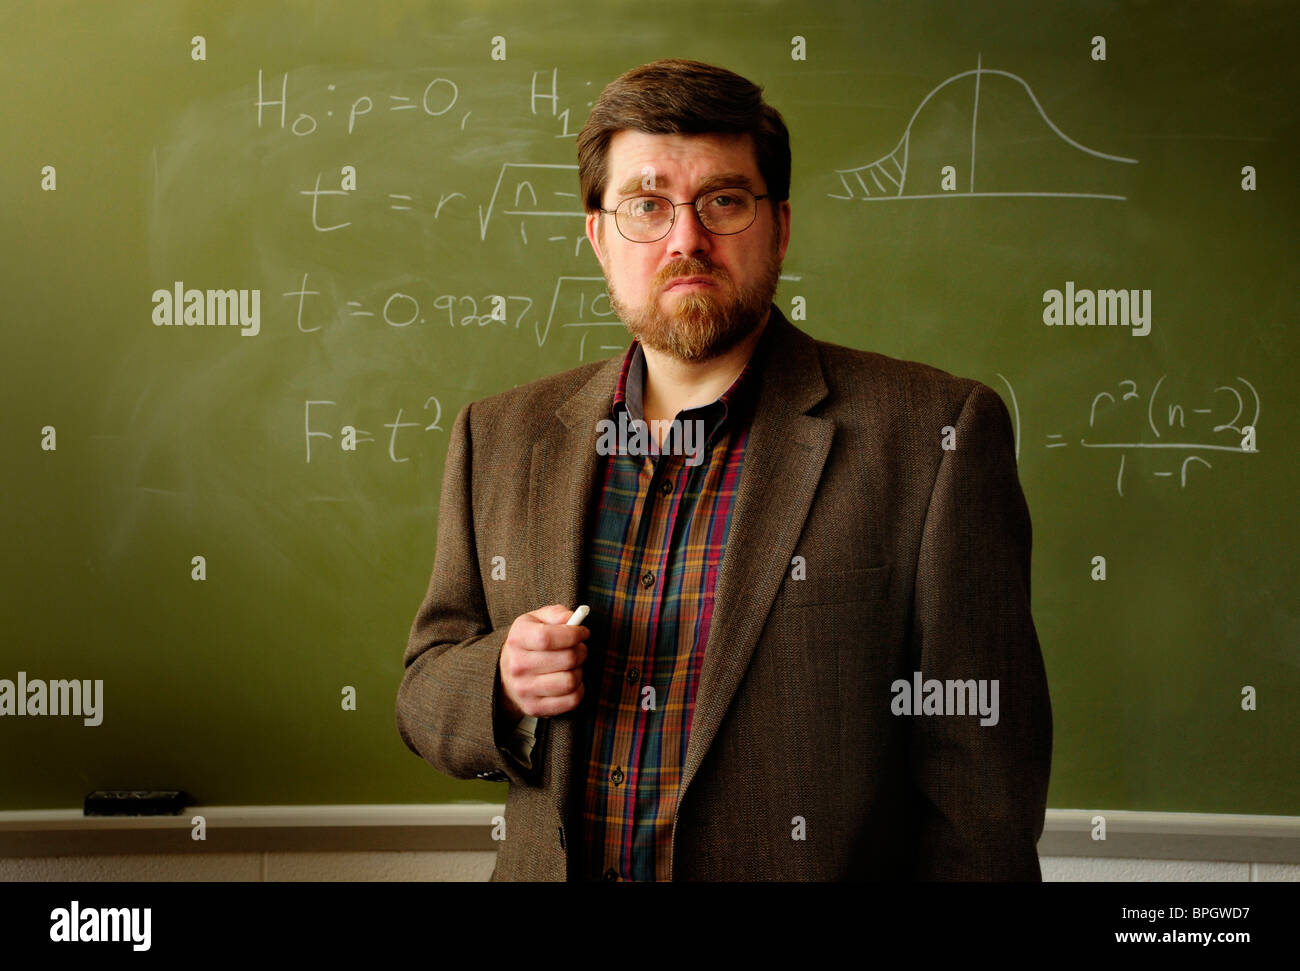 Math Professor oder Lehrer stehen in einem Klassenzimmer, statistischen Formel an grüne Tafel im Hintergrund. Stockfoto